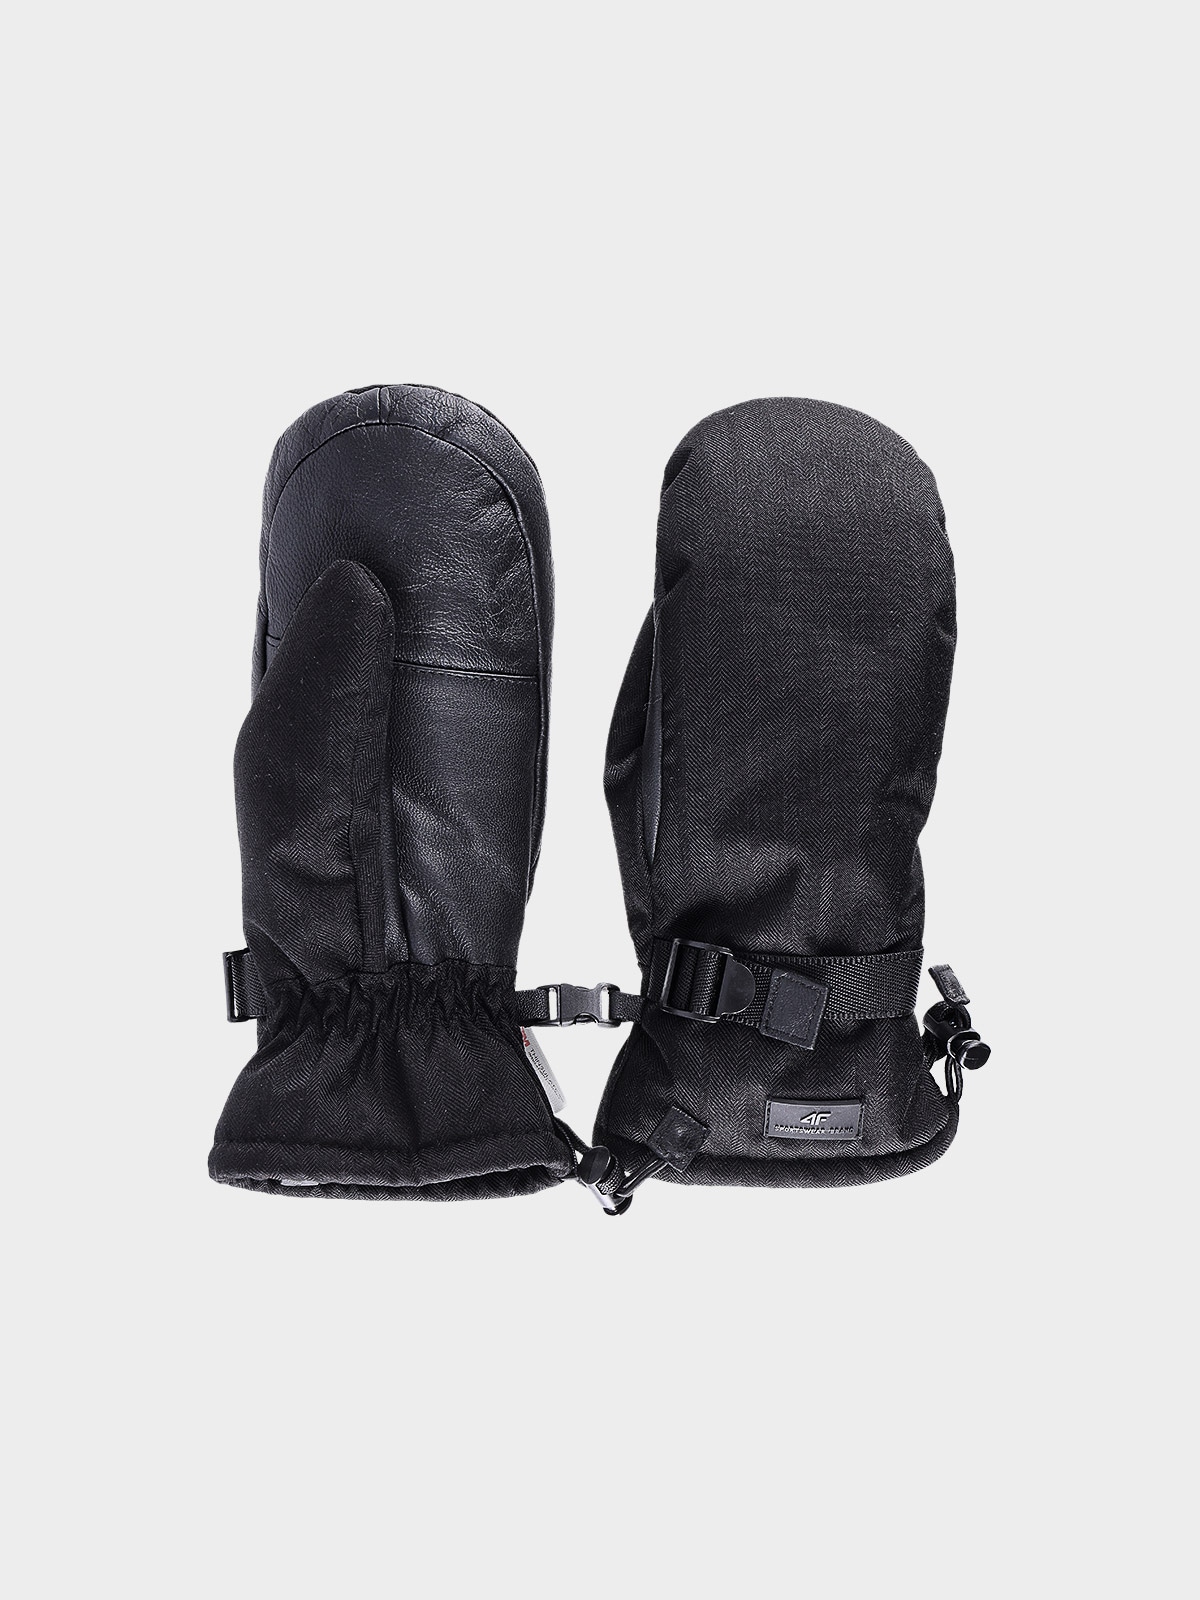 Dámske lyžiarske rukavice Thinsulate© - čierne